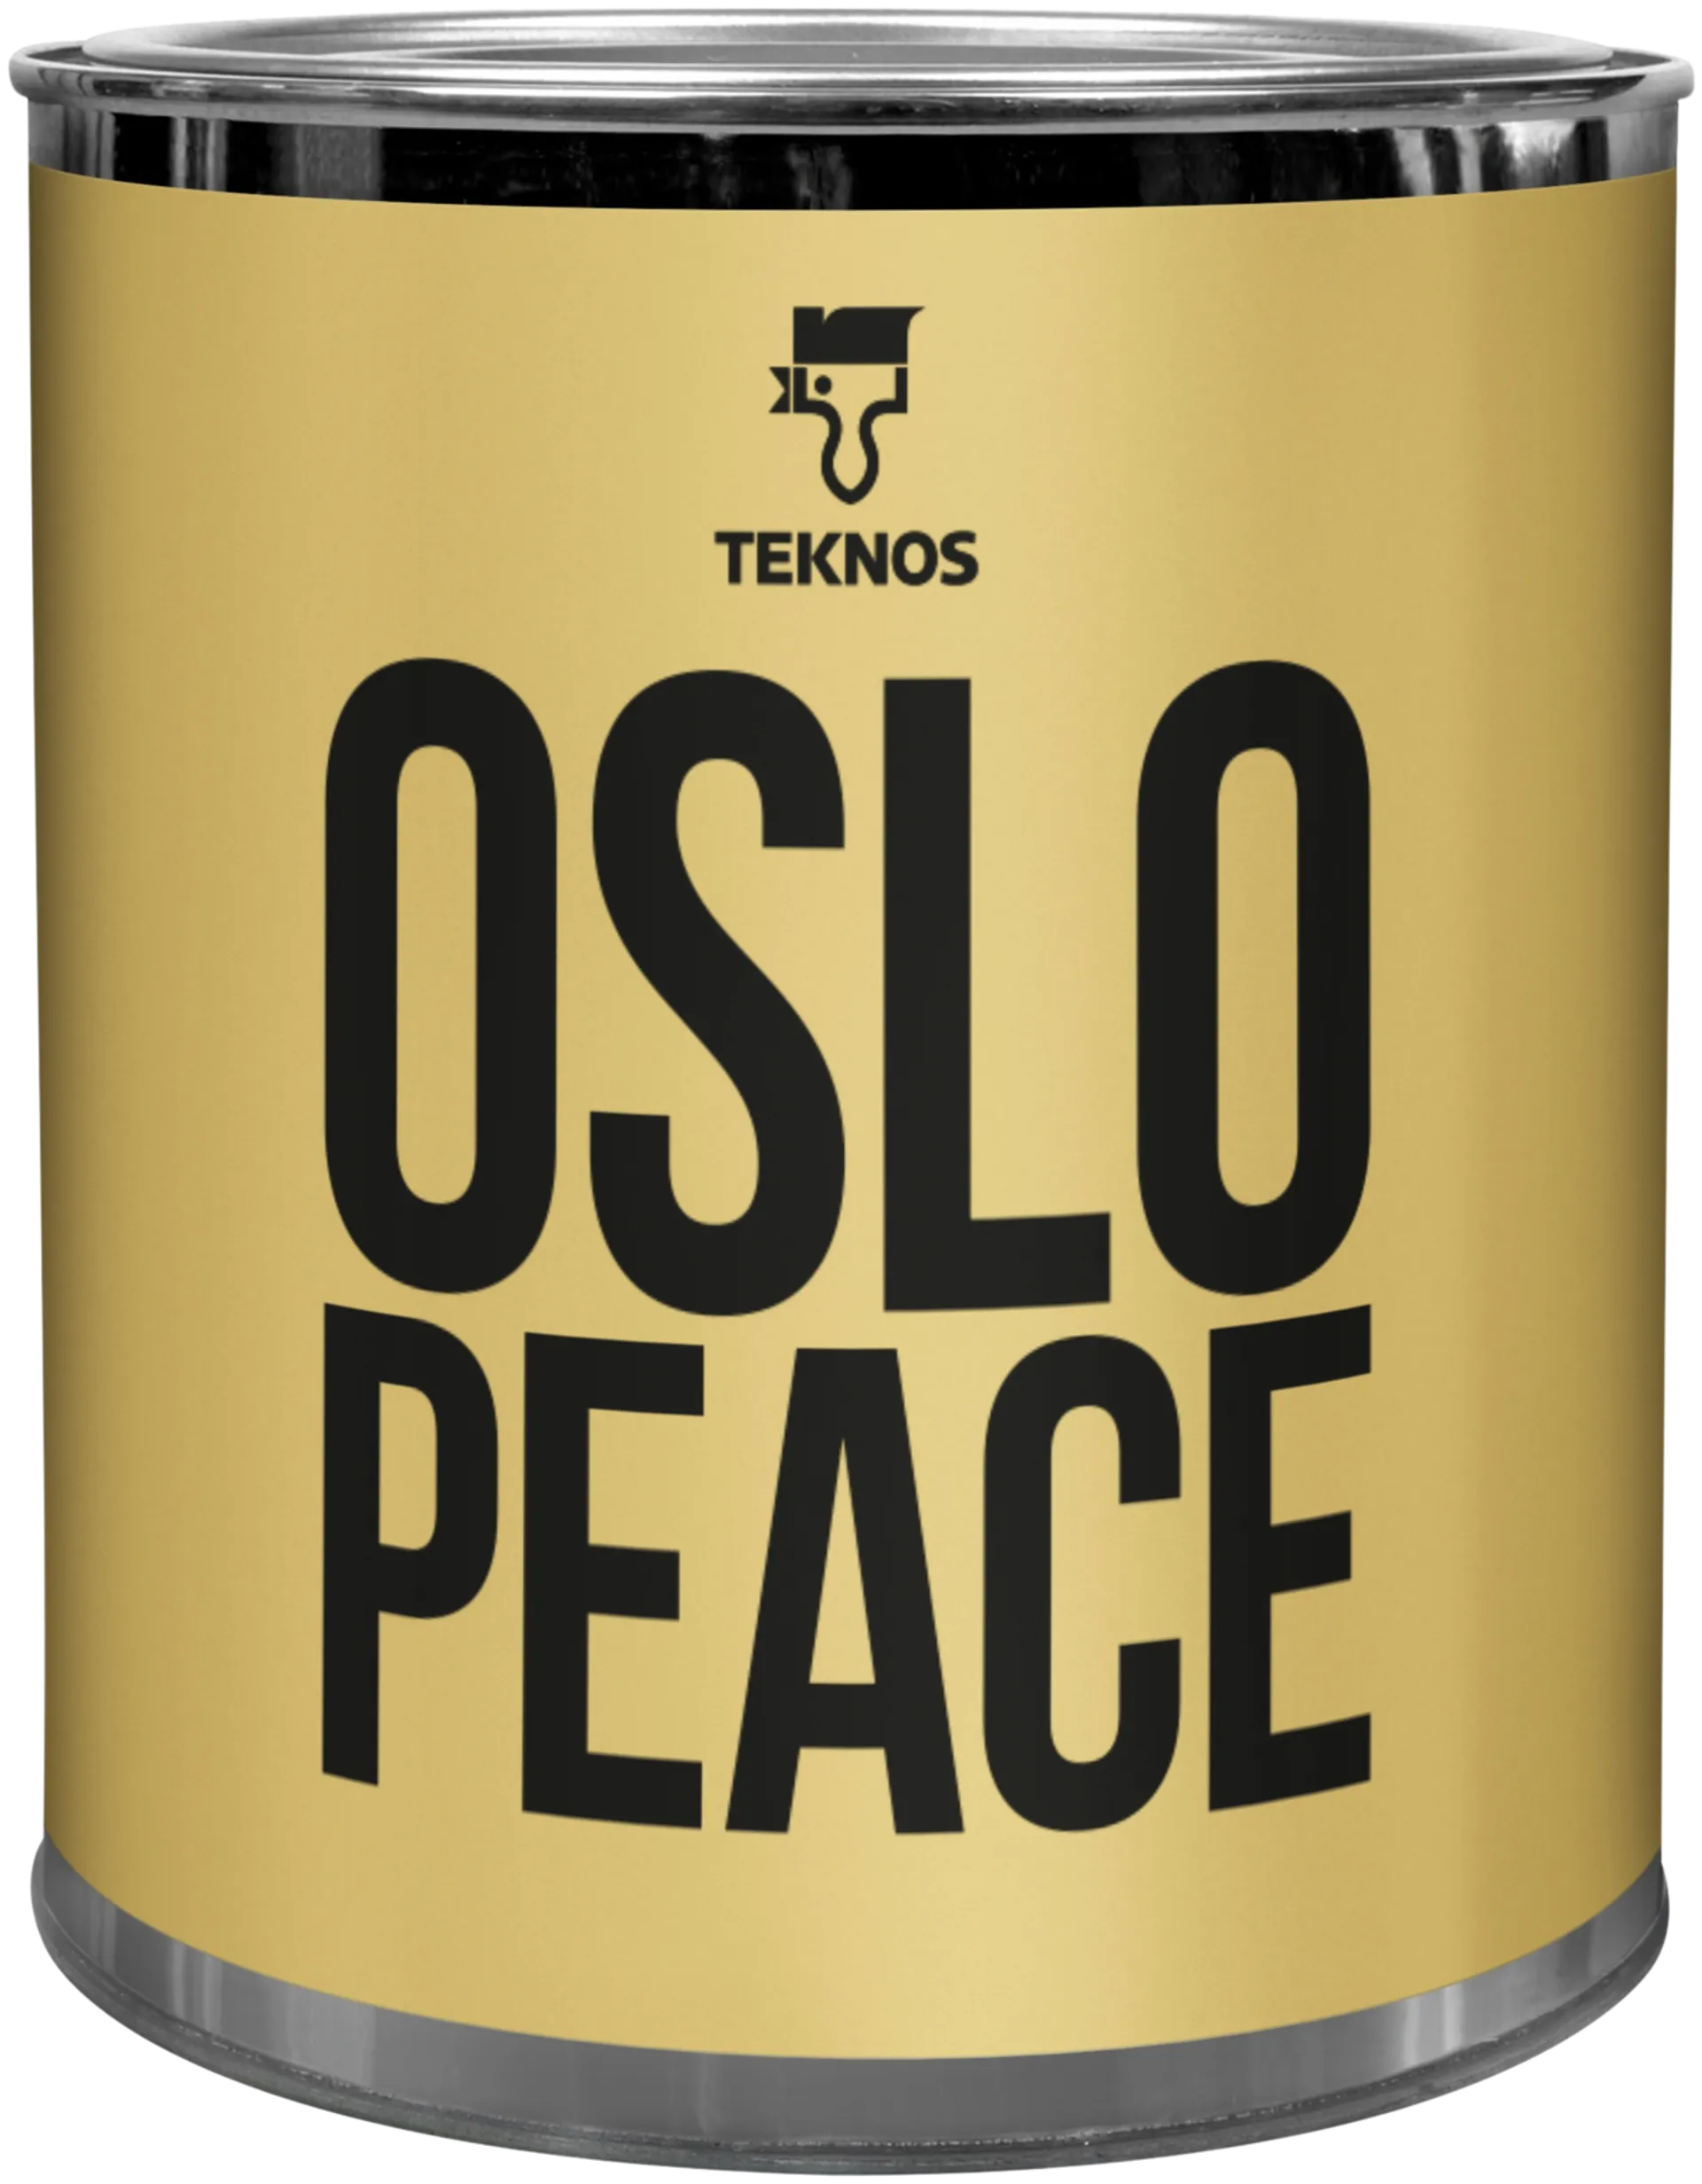 Teknos Colour sample Oslo peace T1603